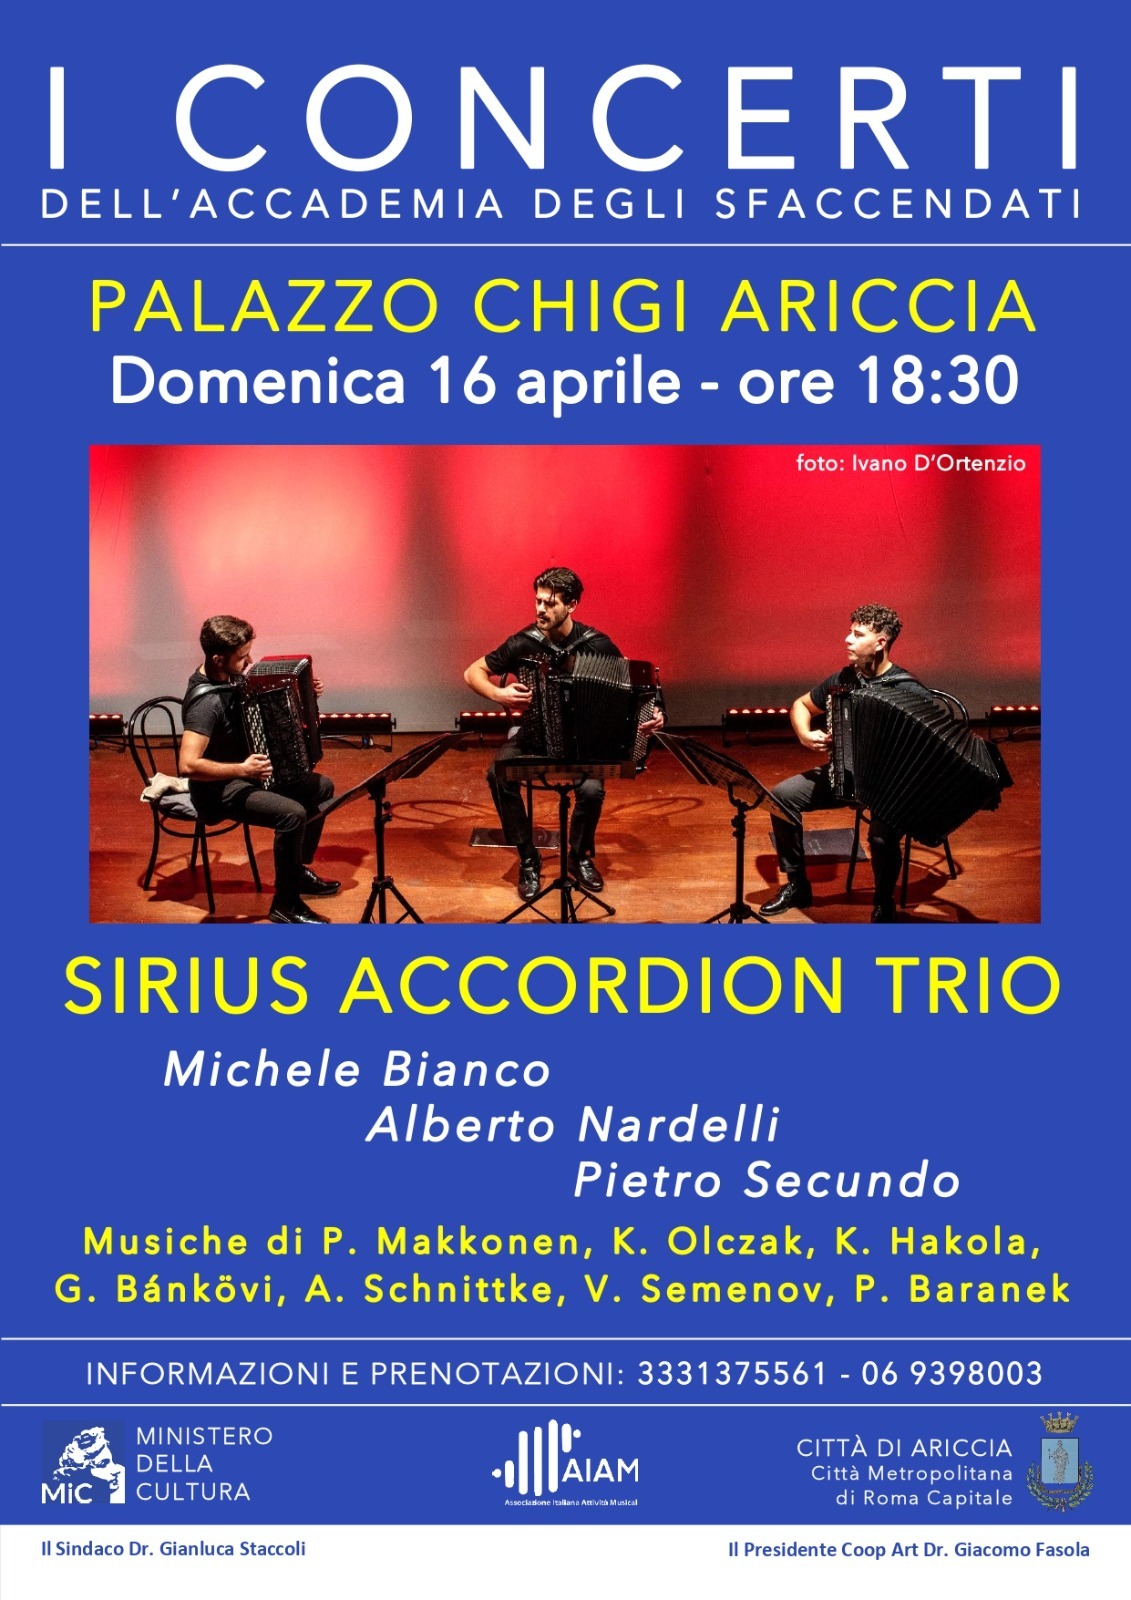 Sirius Accordion Trio inaugura nuova Stagione dell’Accademia degli Sfaccendati